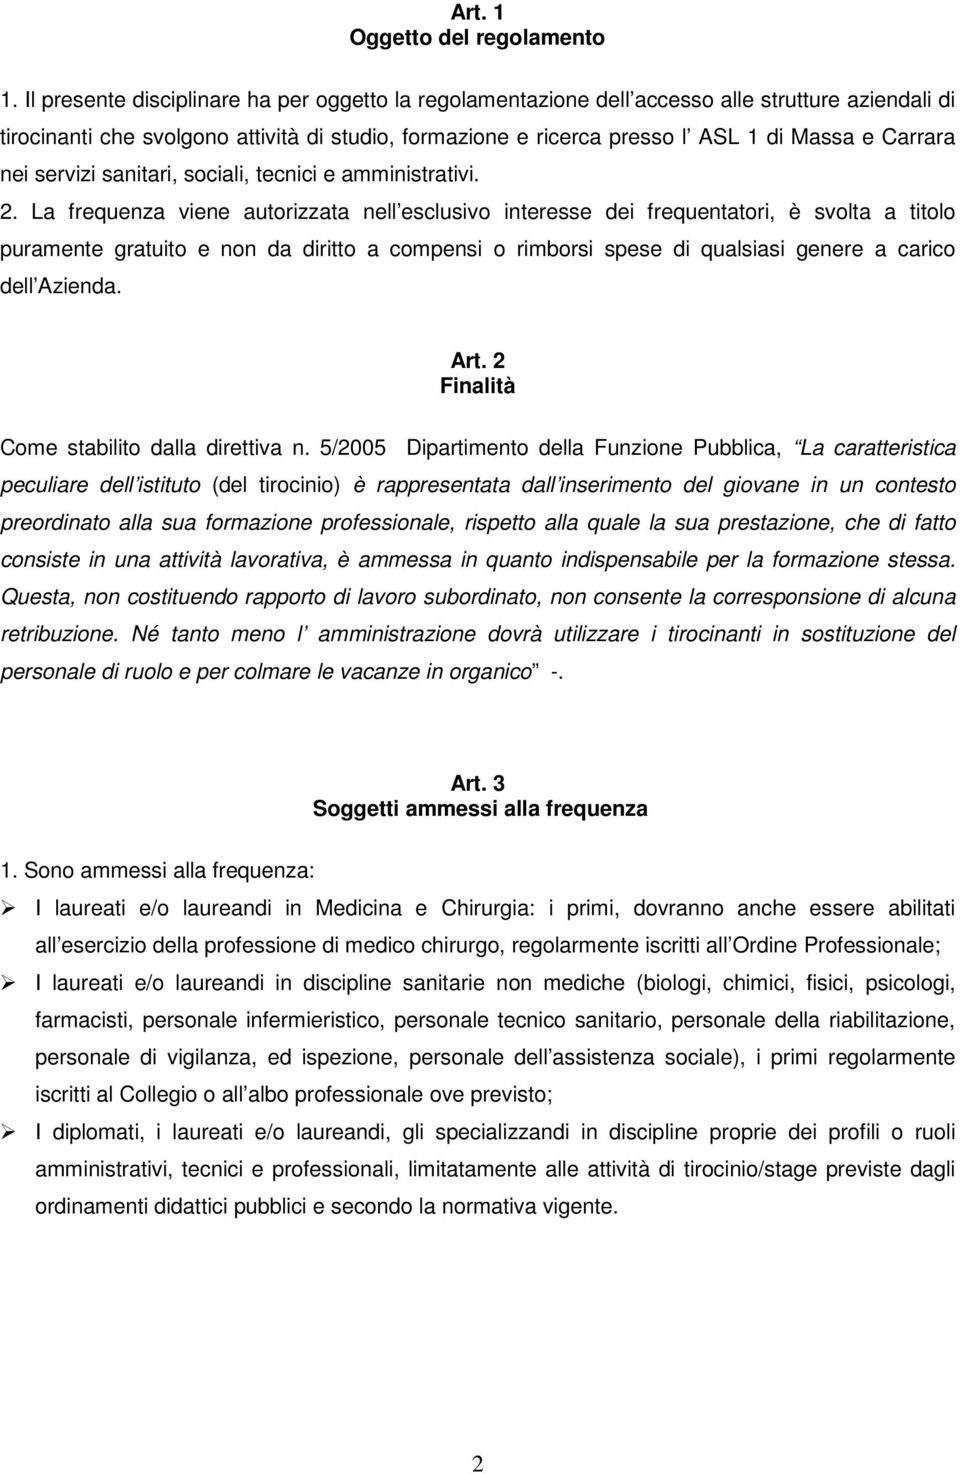 Carrara nei servizi sanitari, sociali, tecnici e amministrativi. 2.